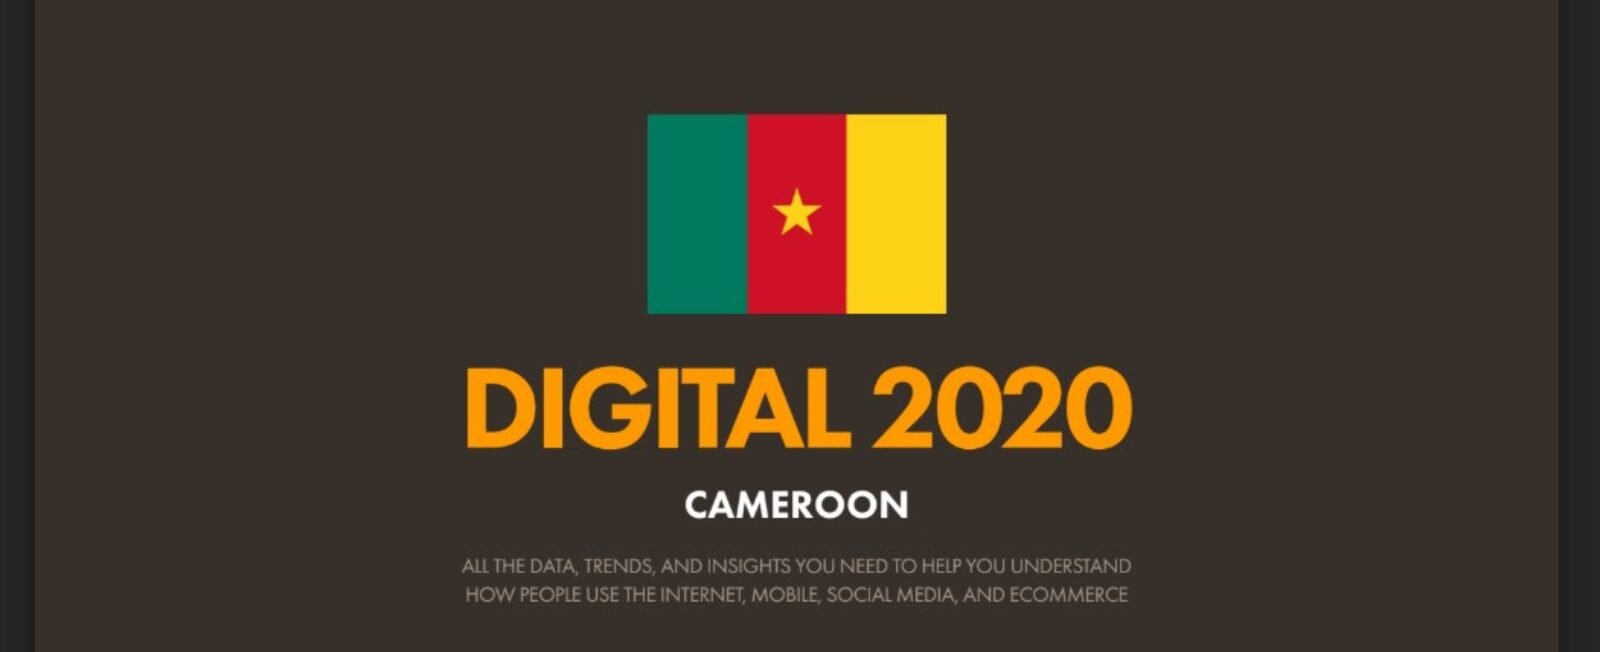 Rapport Digital 2020 pour le Cameroun, près de 8 millions d’internautes dont 50% sont sur les réseaux sociaux!